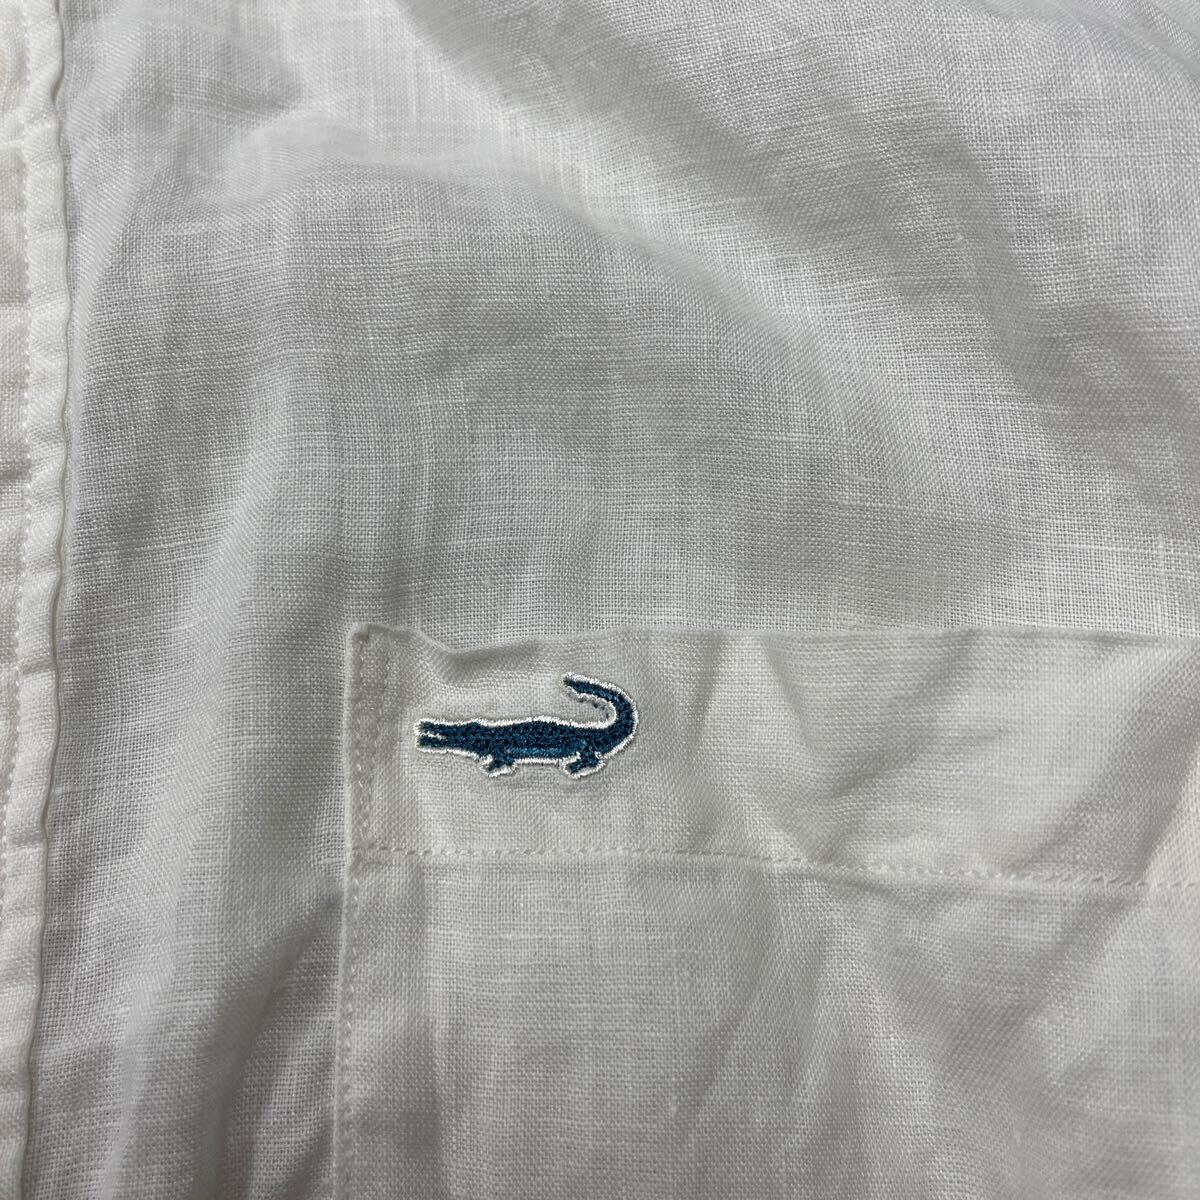 Crocodile blue label クロコダイル ブルーレーベル 長袖シャツ 胸ポケット付 Tシャツ メンズ LLサイズ トップス 白 ホワイト 麻 ヘンプ の画像4